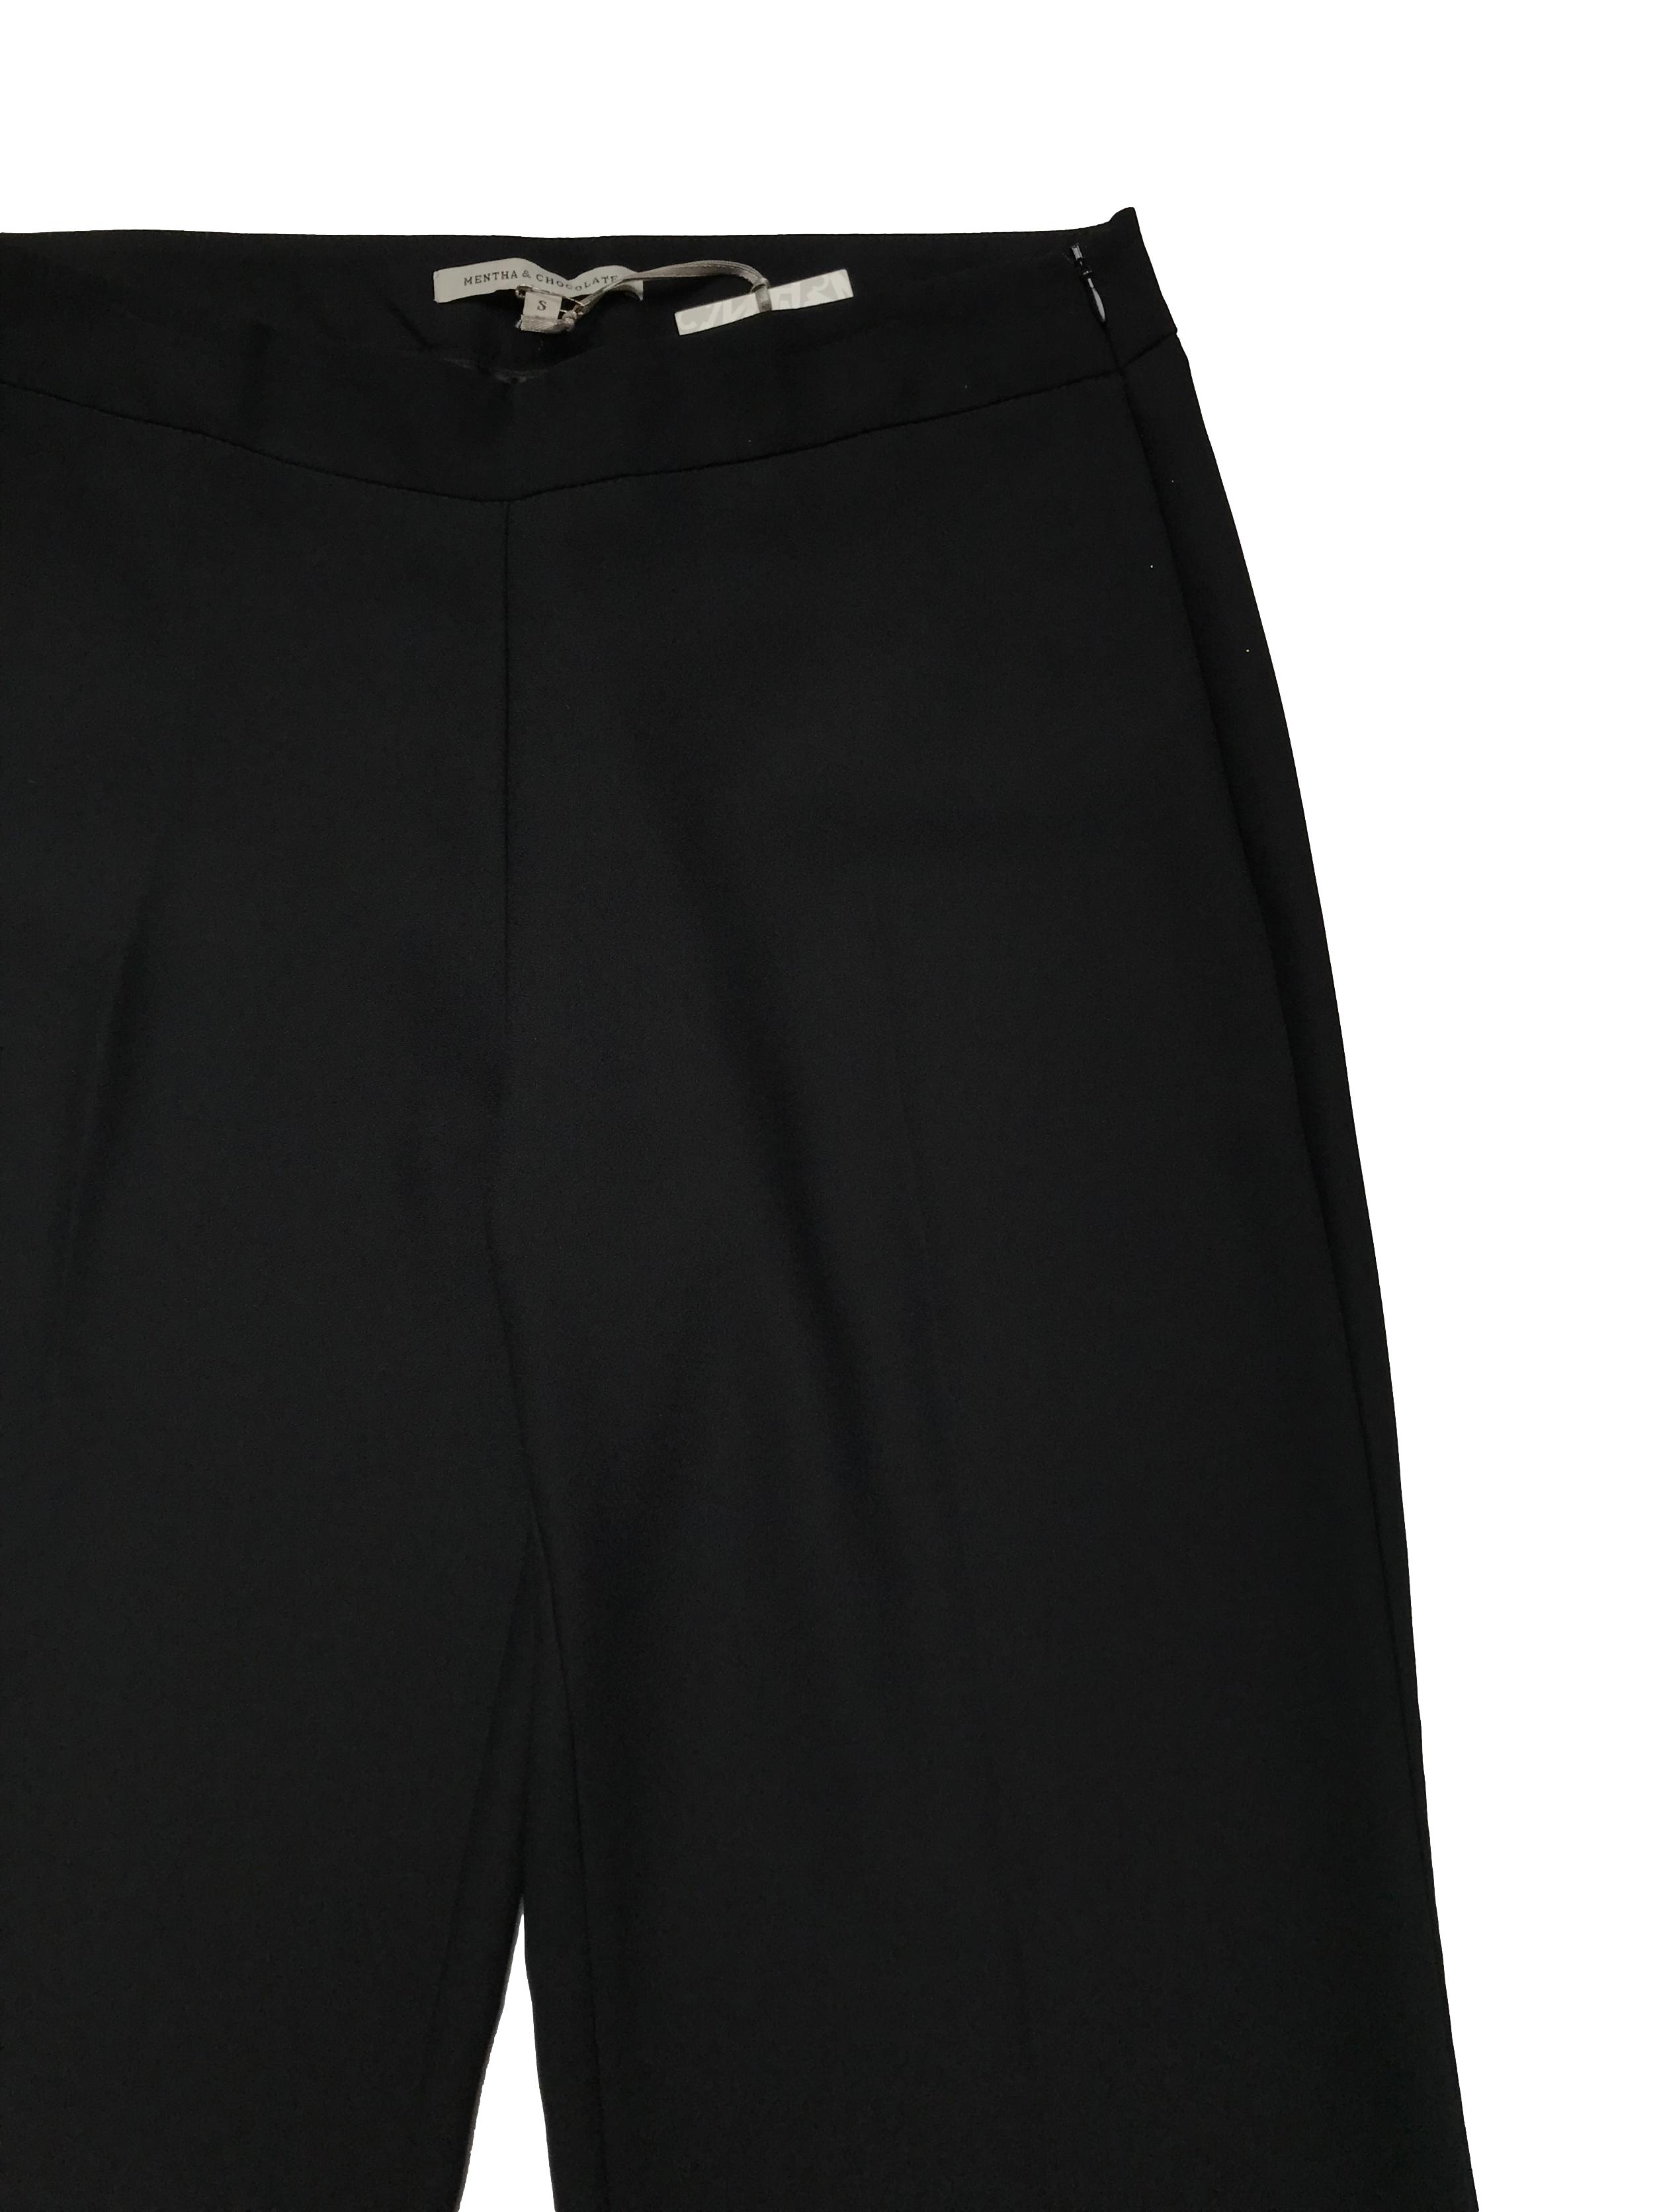 Pantalón formal Mentha&Chocolate negro, a la cintura con pinzas posteriores, cierre lateral y corte pierna ancho con caída hermosa. Cintura 80cm Largo 110cm. Nuevo con etiqueta. Precio original S/ 179